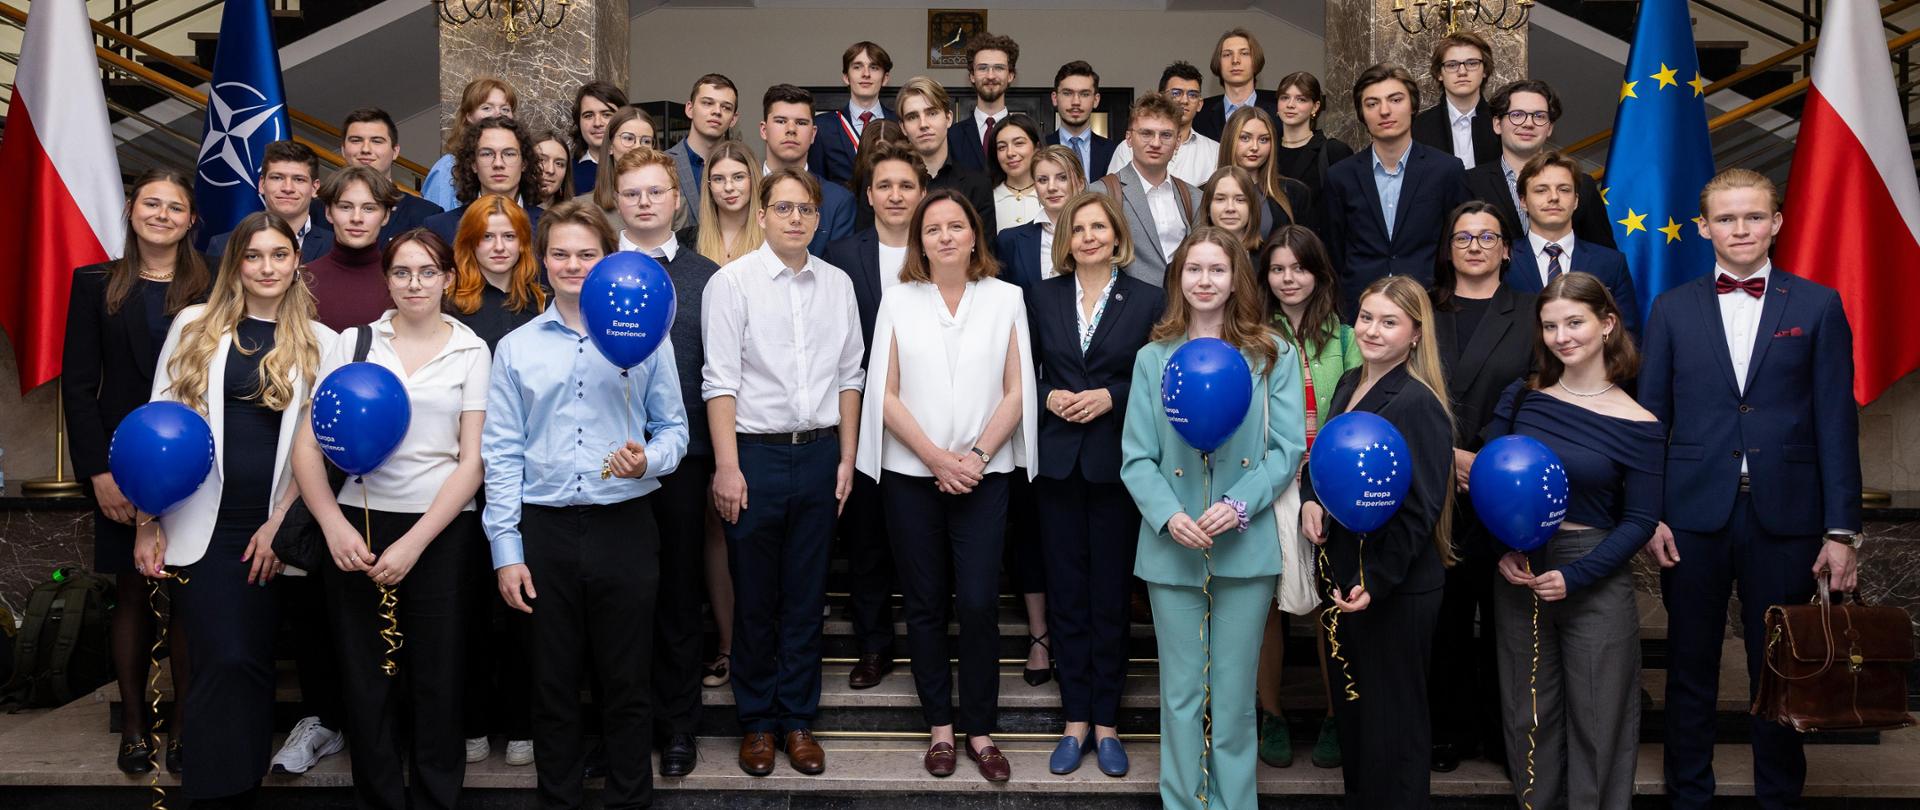 Z okazji 20 lat członkostwa Polski w Unii Europejskiej z inicjatywy wiceminister Anny Radwan odbyło się spotkanie ze studentami - zdjęcie grupowe w holu głównym MSZ